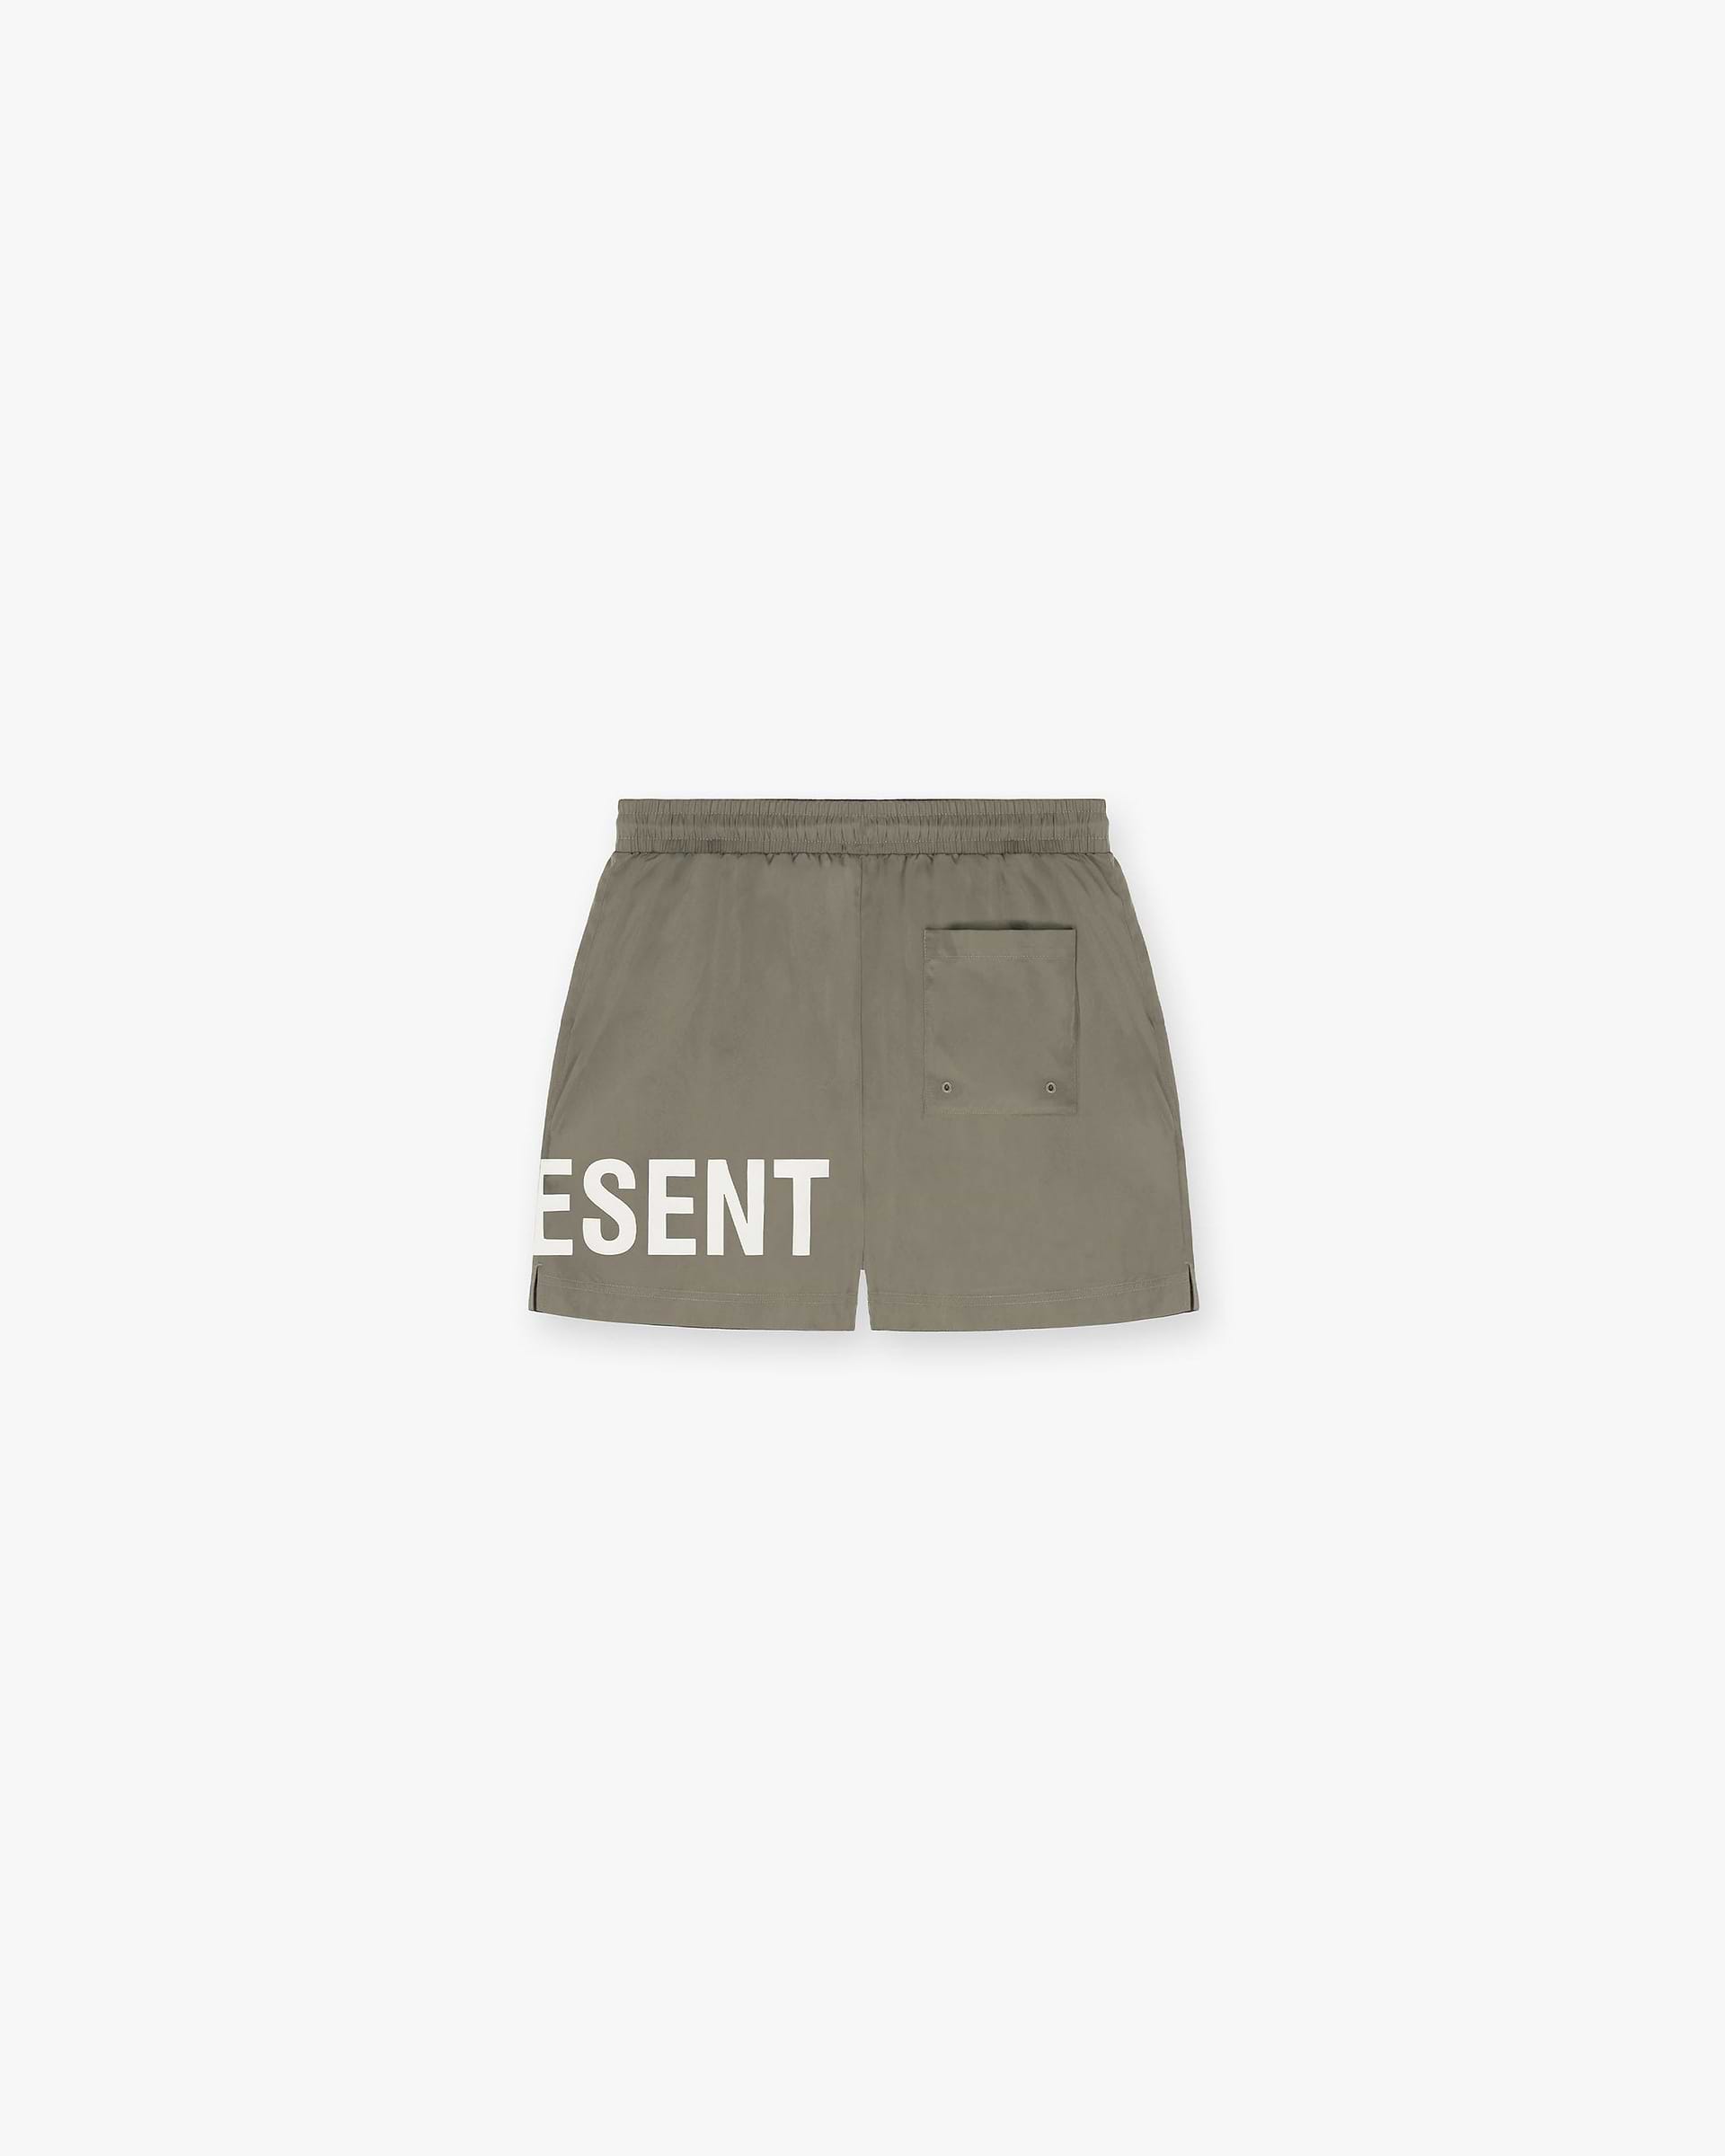 Swim Shorts | Khaki Shorts SC23 | Represent Clo